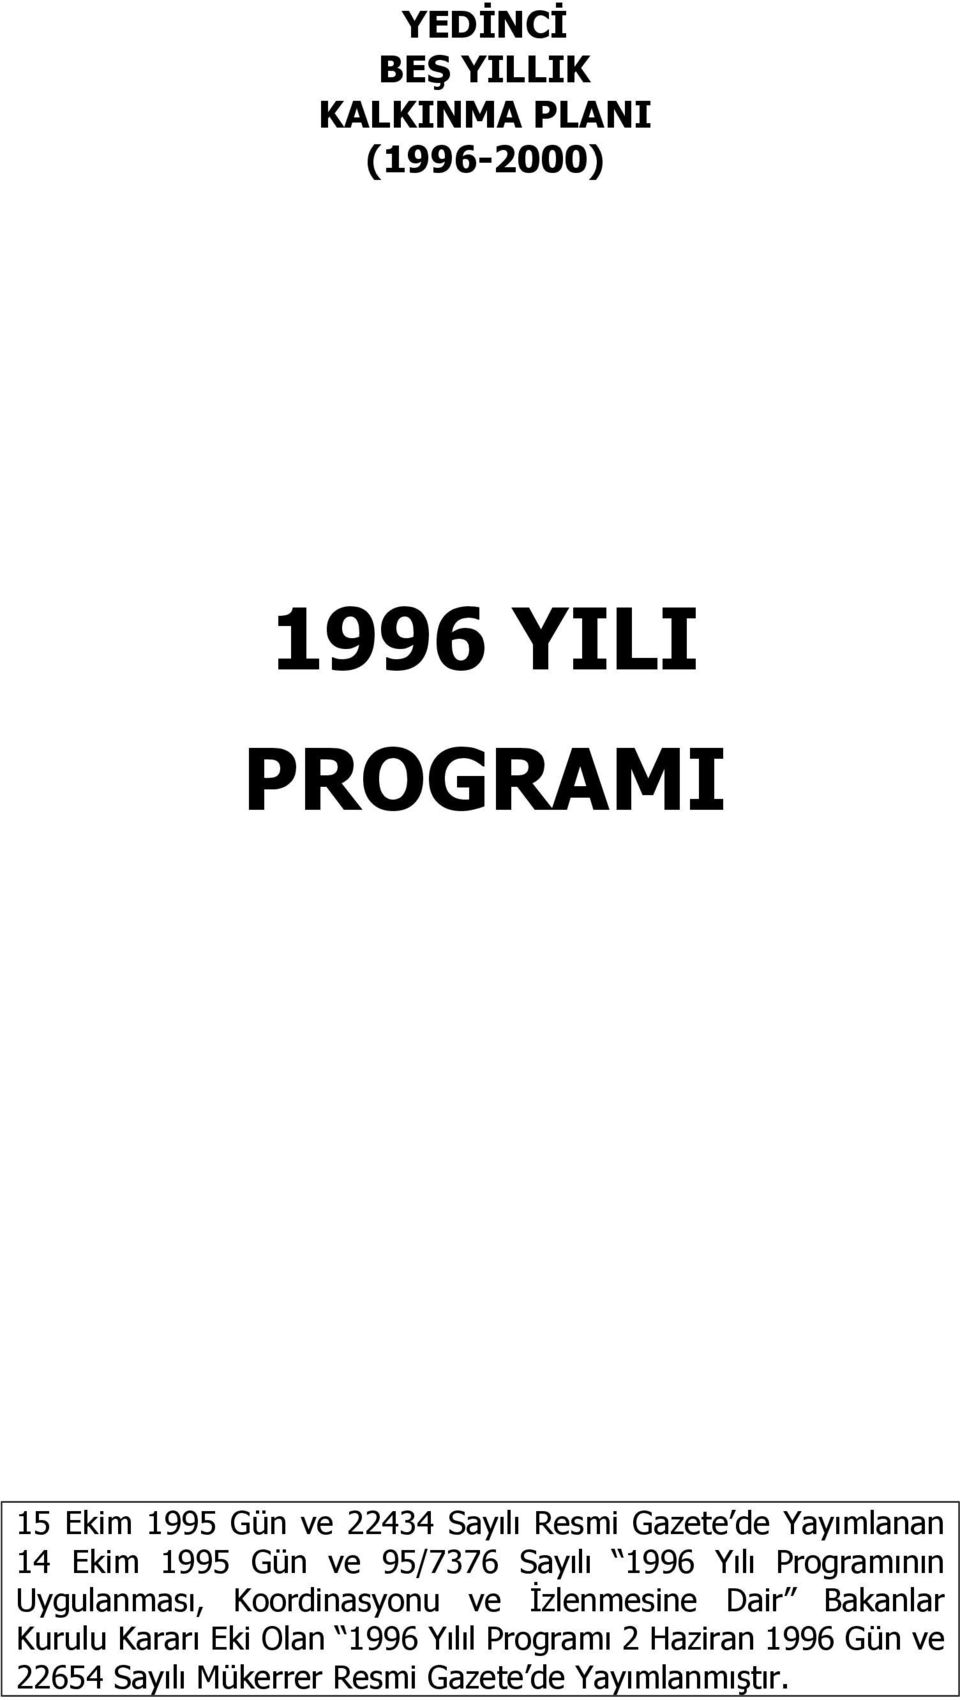 Uygulanmasõ, Koordinasyonu ve İzlenmesine Dair Bakanlar Kurulu Kararõ Eki Olan 1996